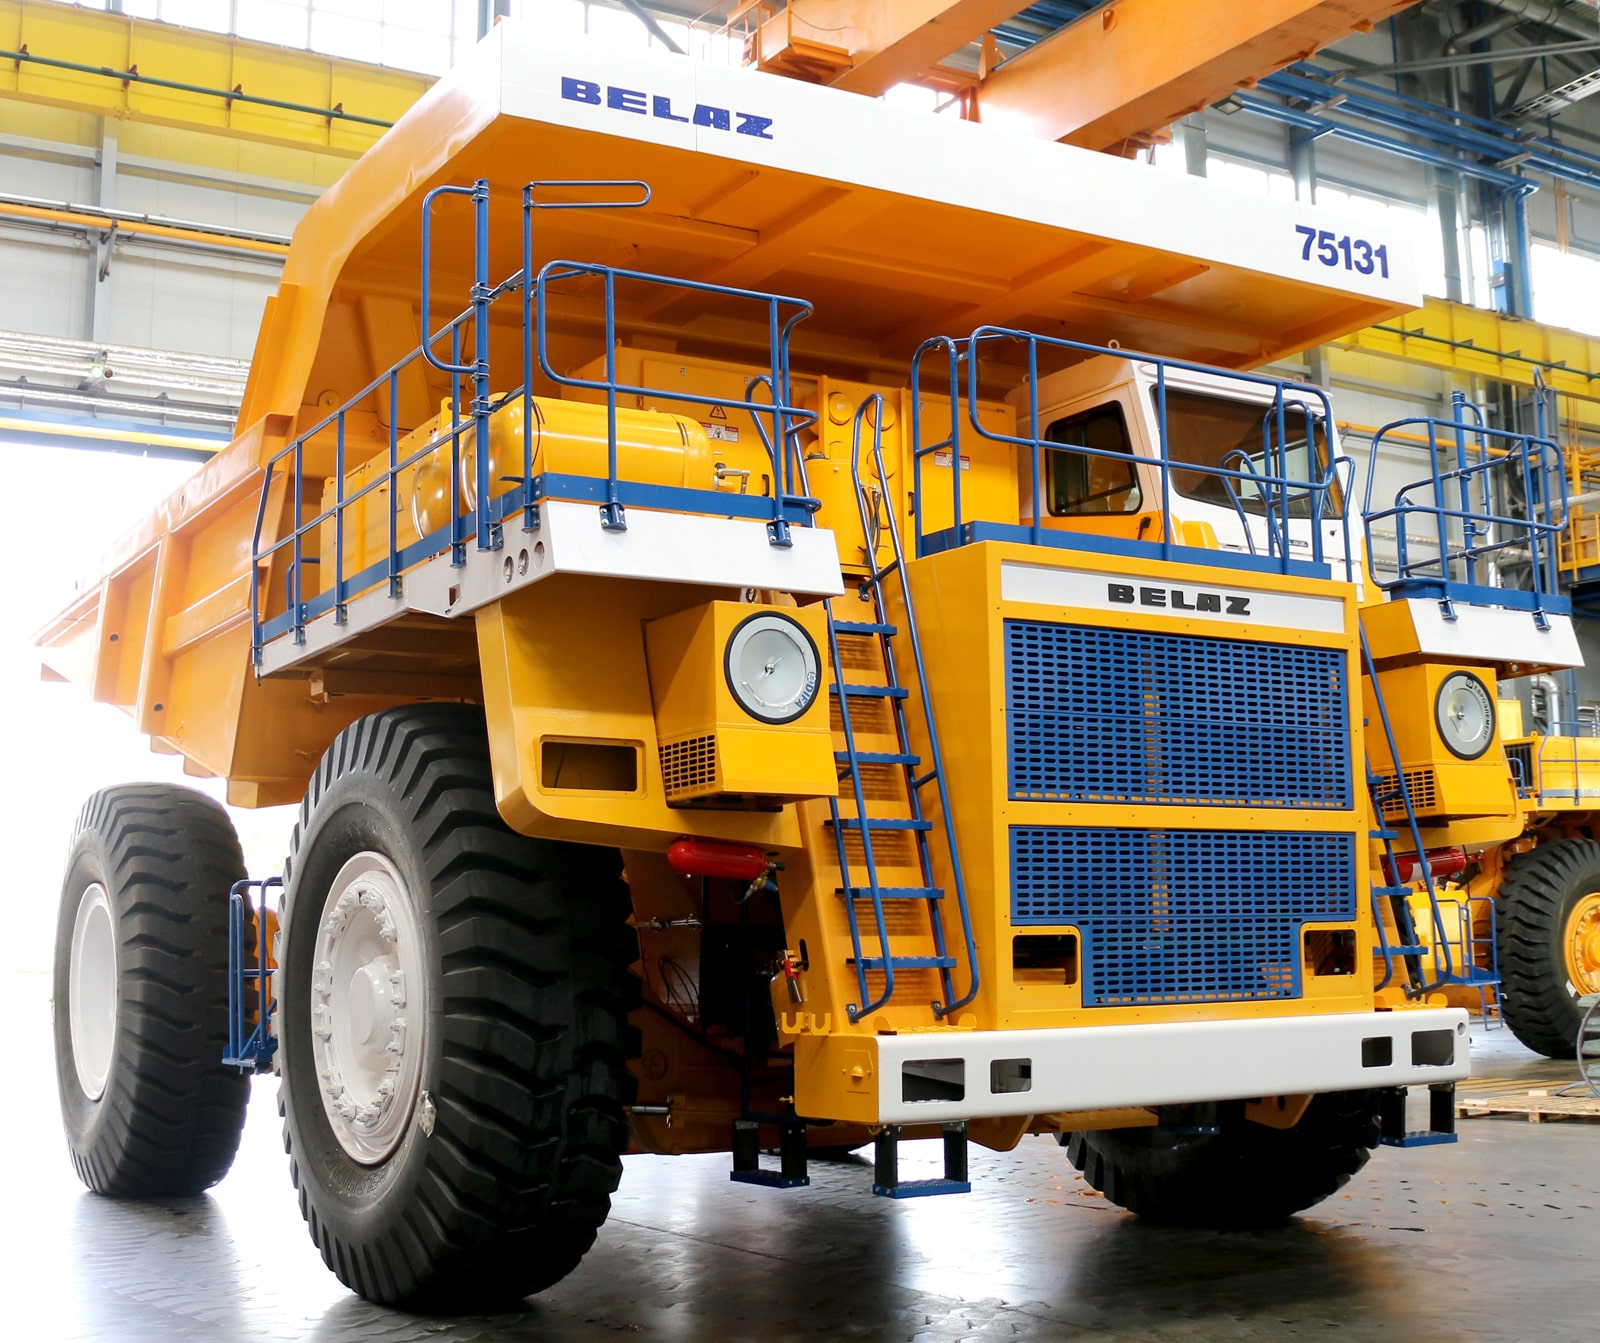 BELAZ 75131 camión volquete se somete a reemplazo de motor con KTA50-C1600 para mejorar el rendimiento.